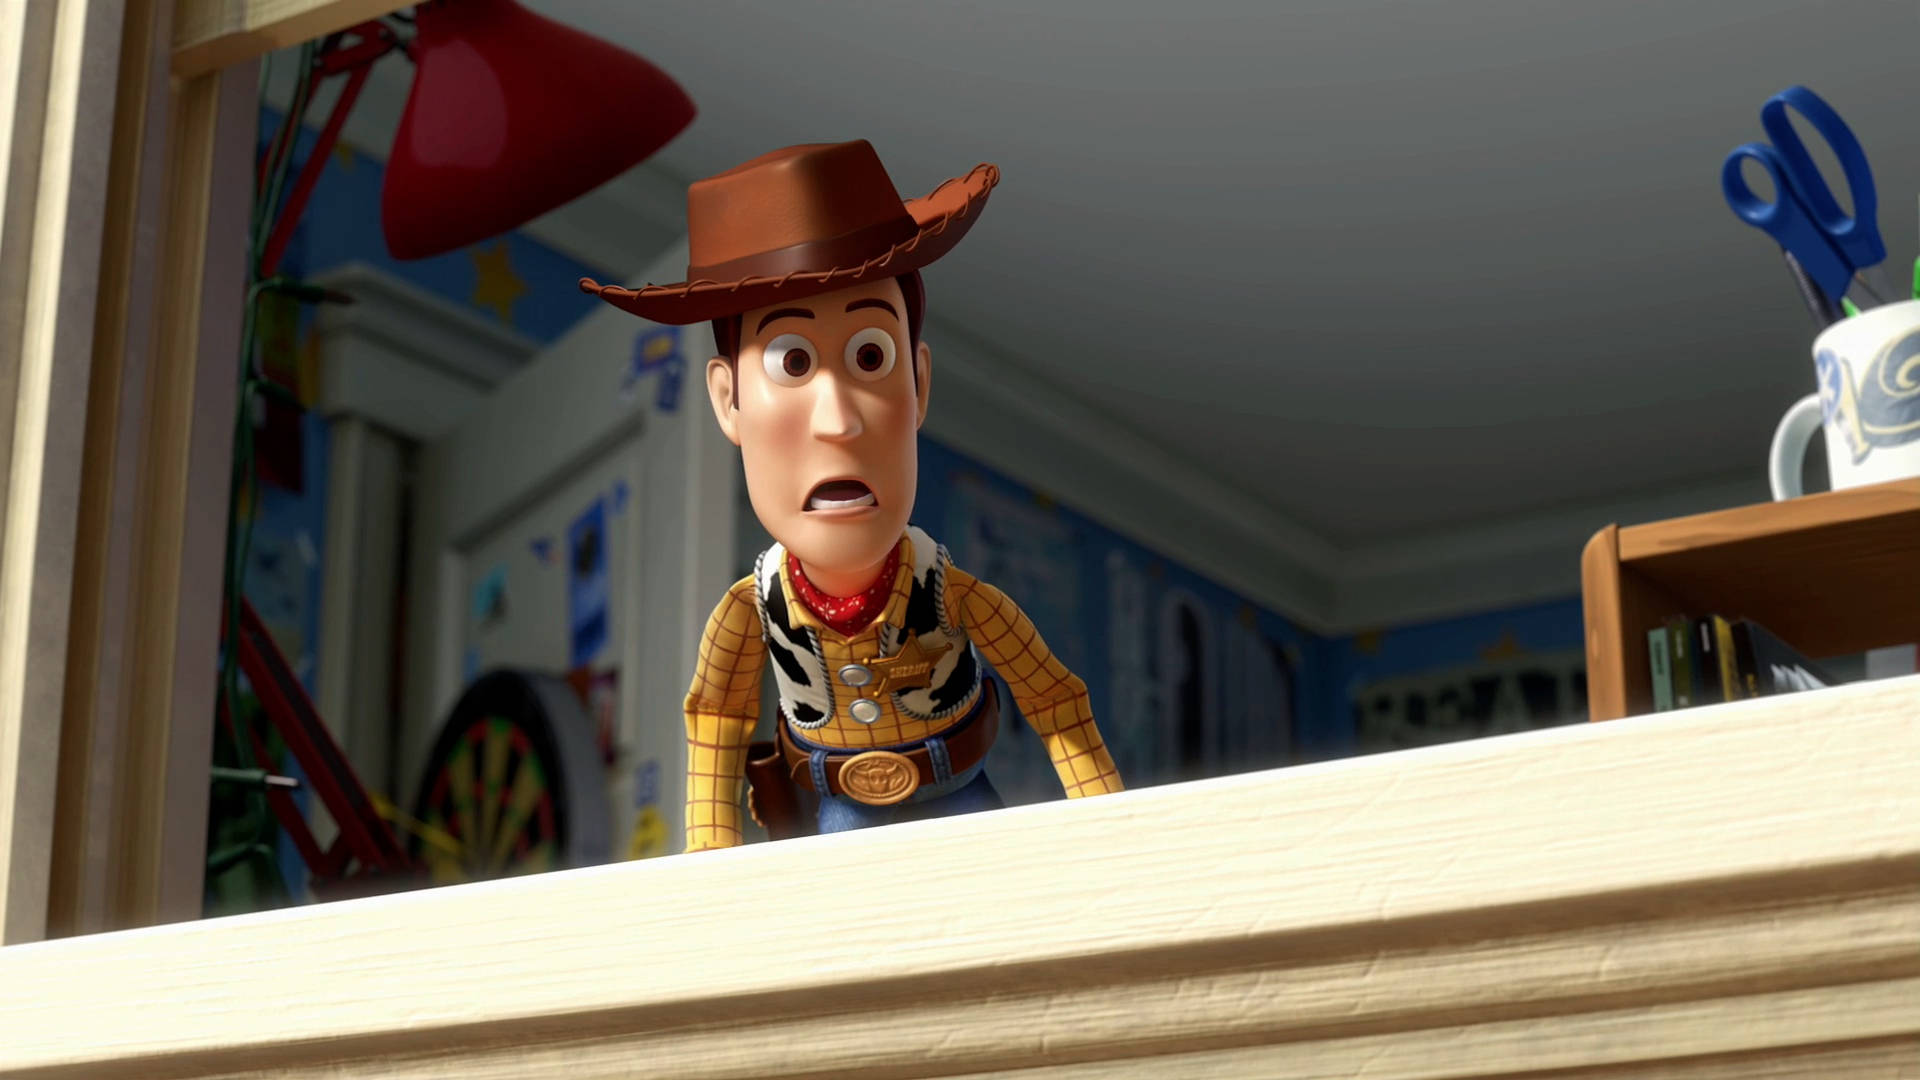 Toystory 3 Woody En La Ventana. Fondo de pantalla